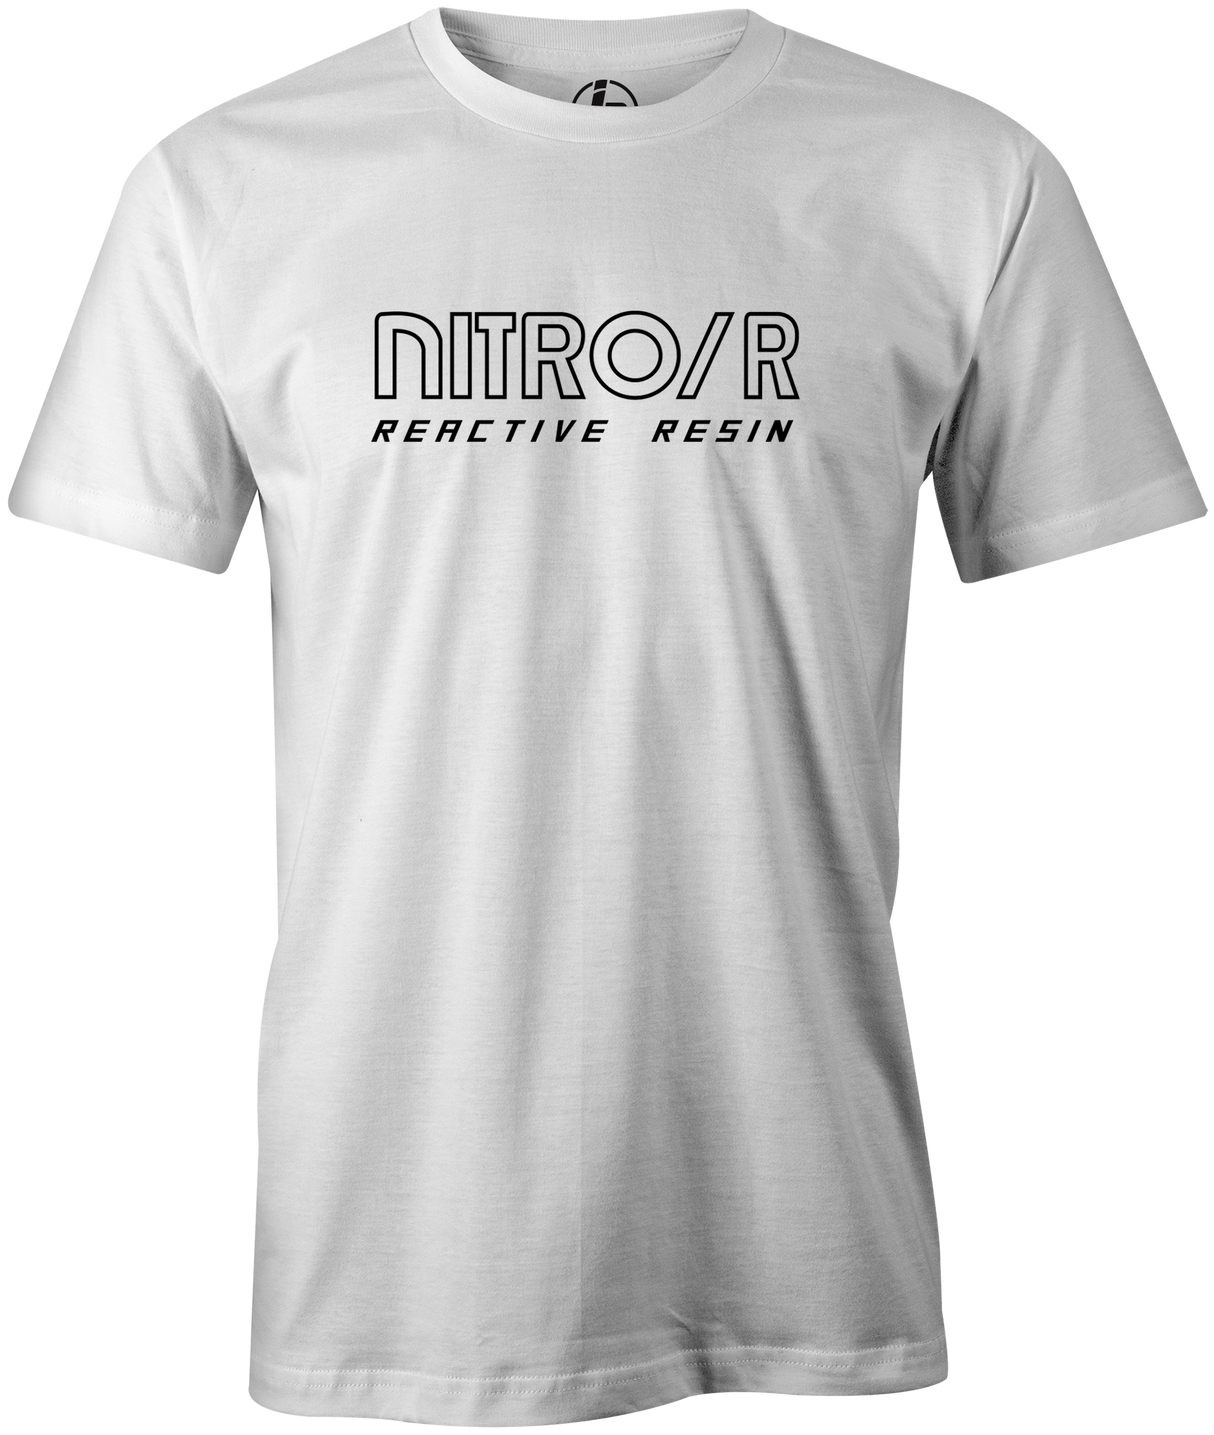 Nitro/R Men's T-Shirt, White, Bowling, bowling ball, ebonite, throwback, retro, vintage, old school, tshirt, tee, tee-shirt, tee shirt.